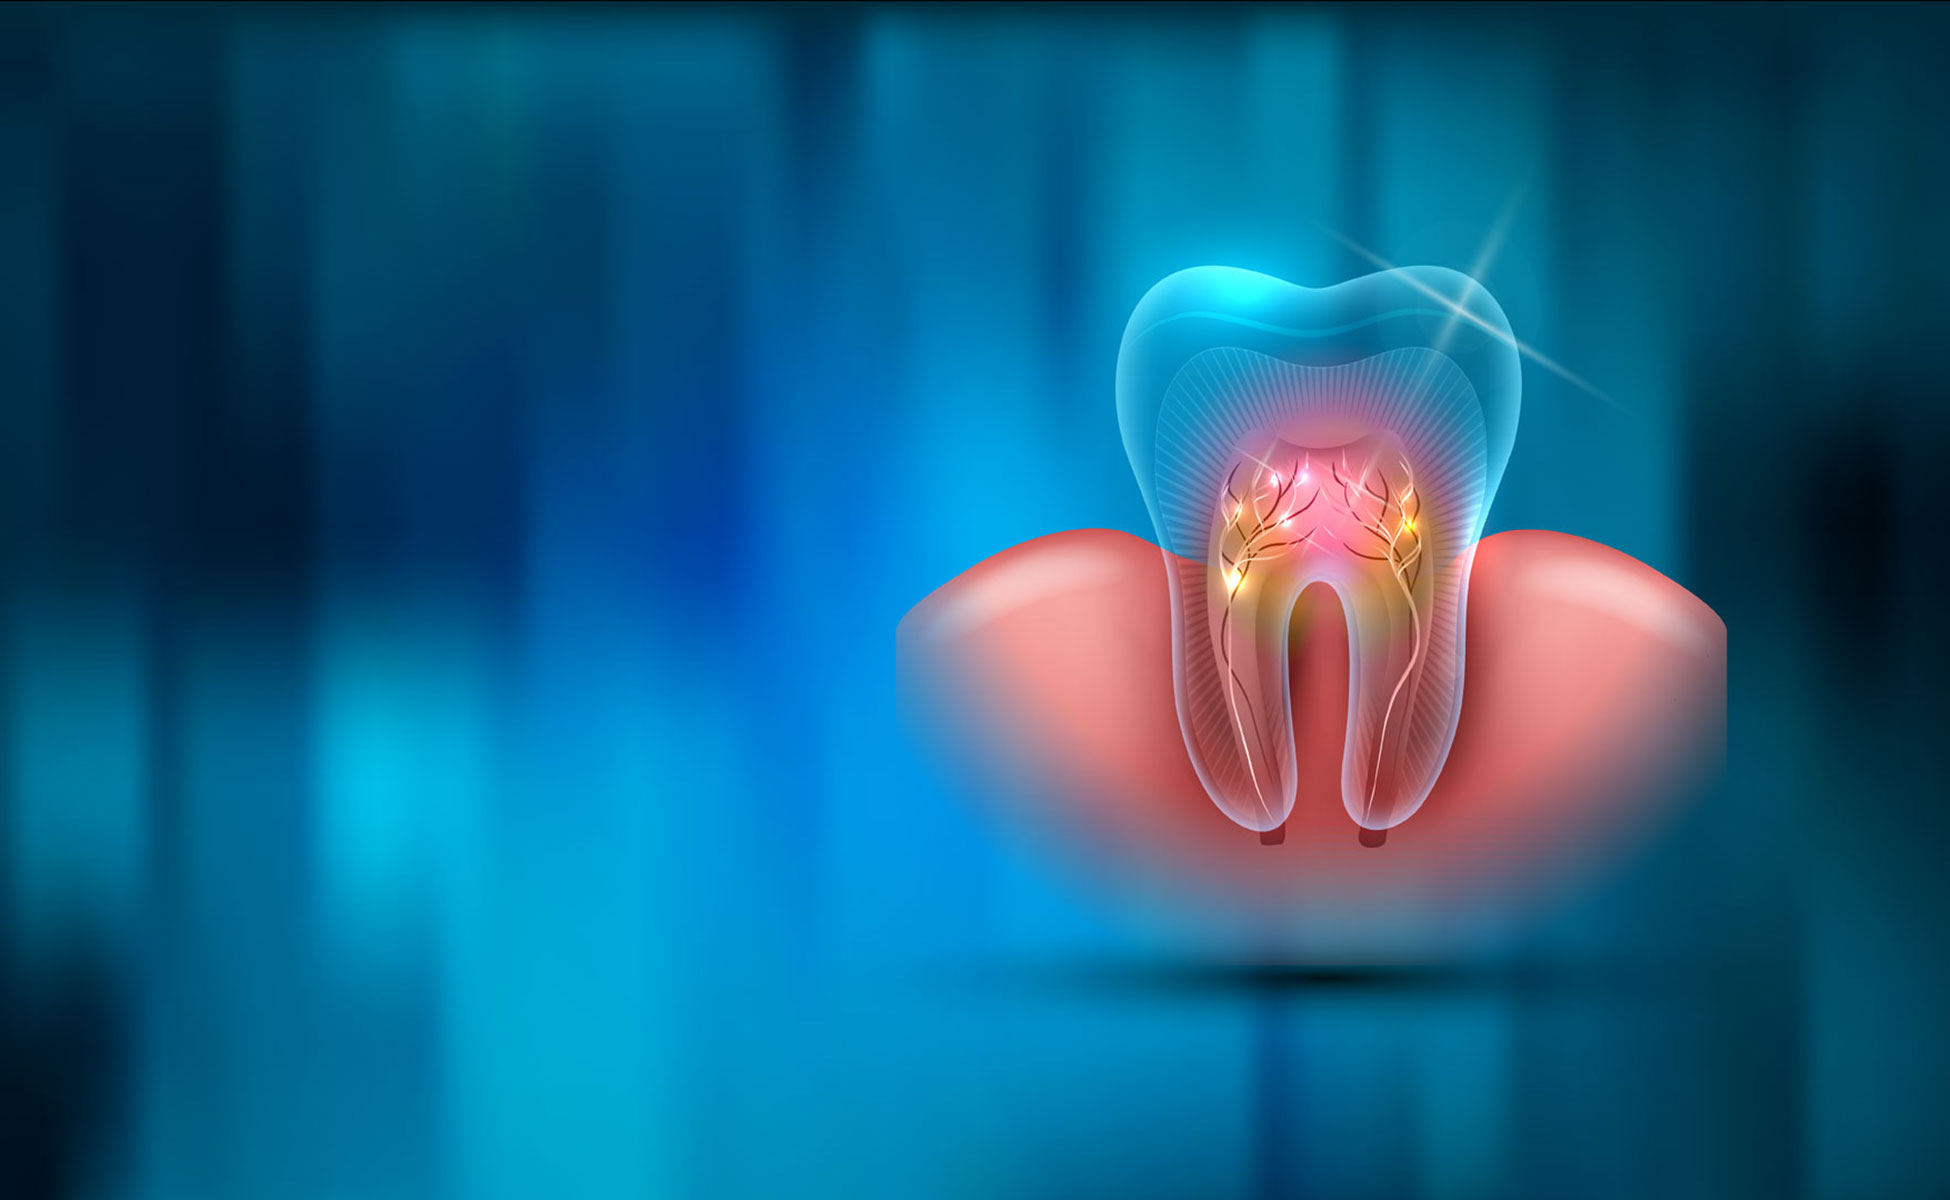 Shematski prikaz presjeka zuba s unutarnjim živcima i potpornim mesom na plavoj pozadini